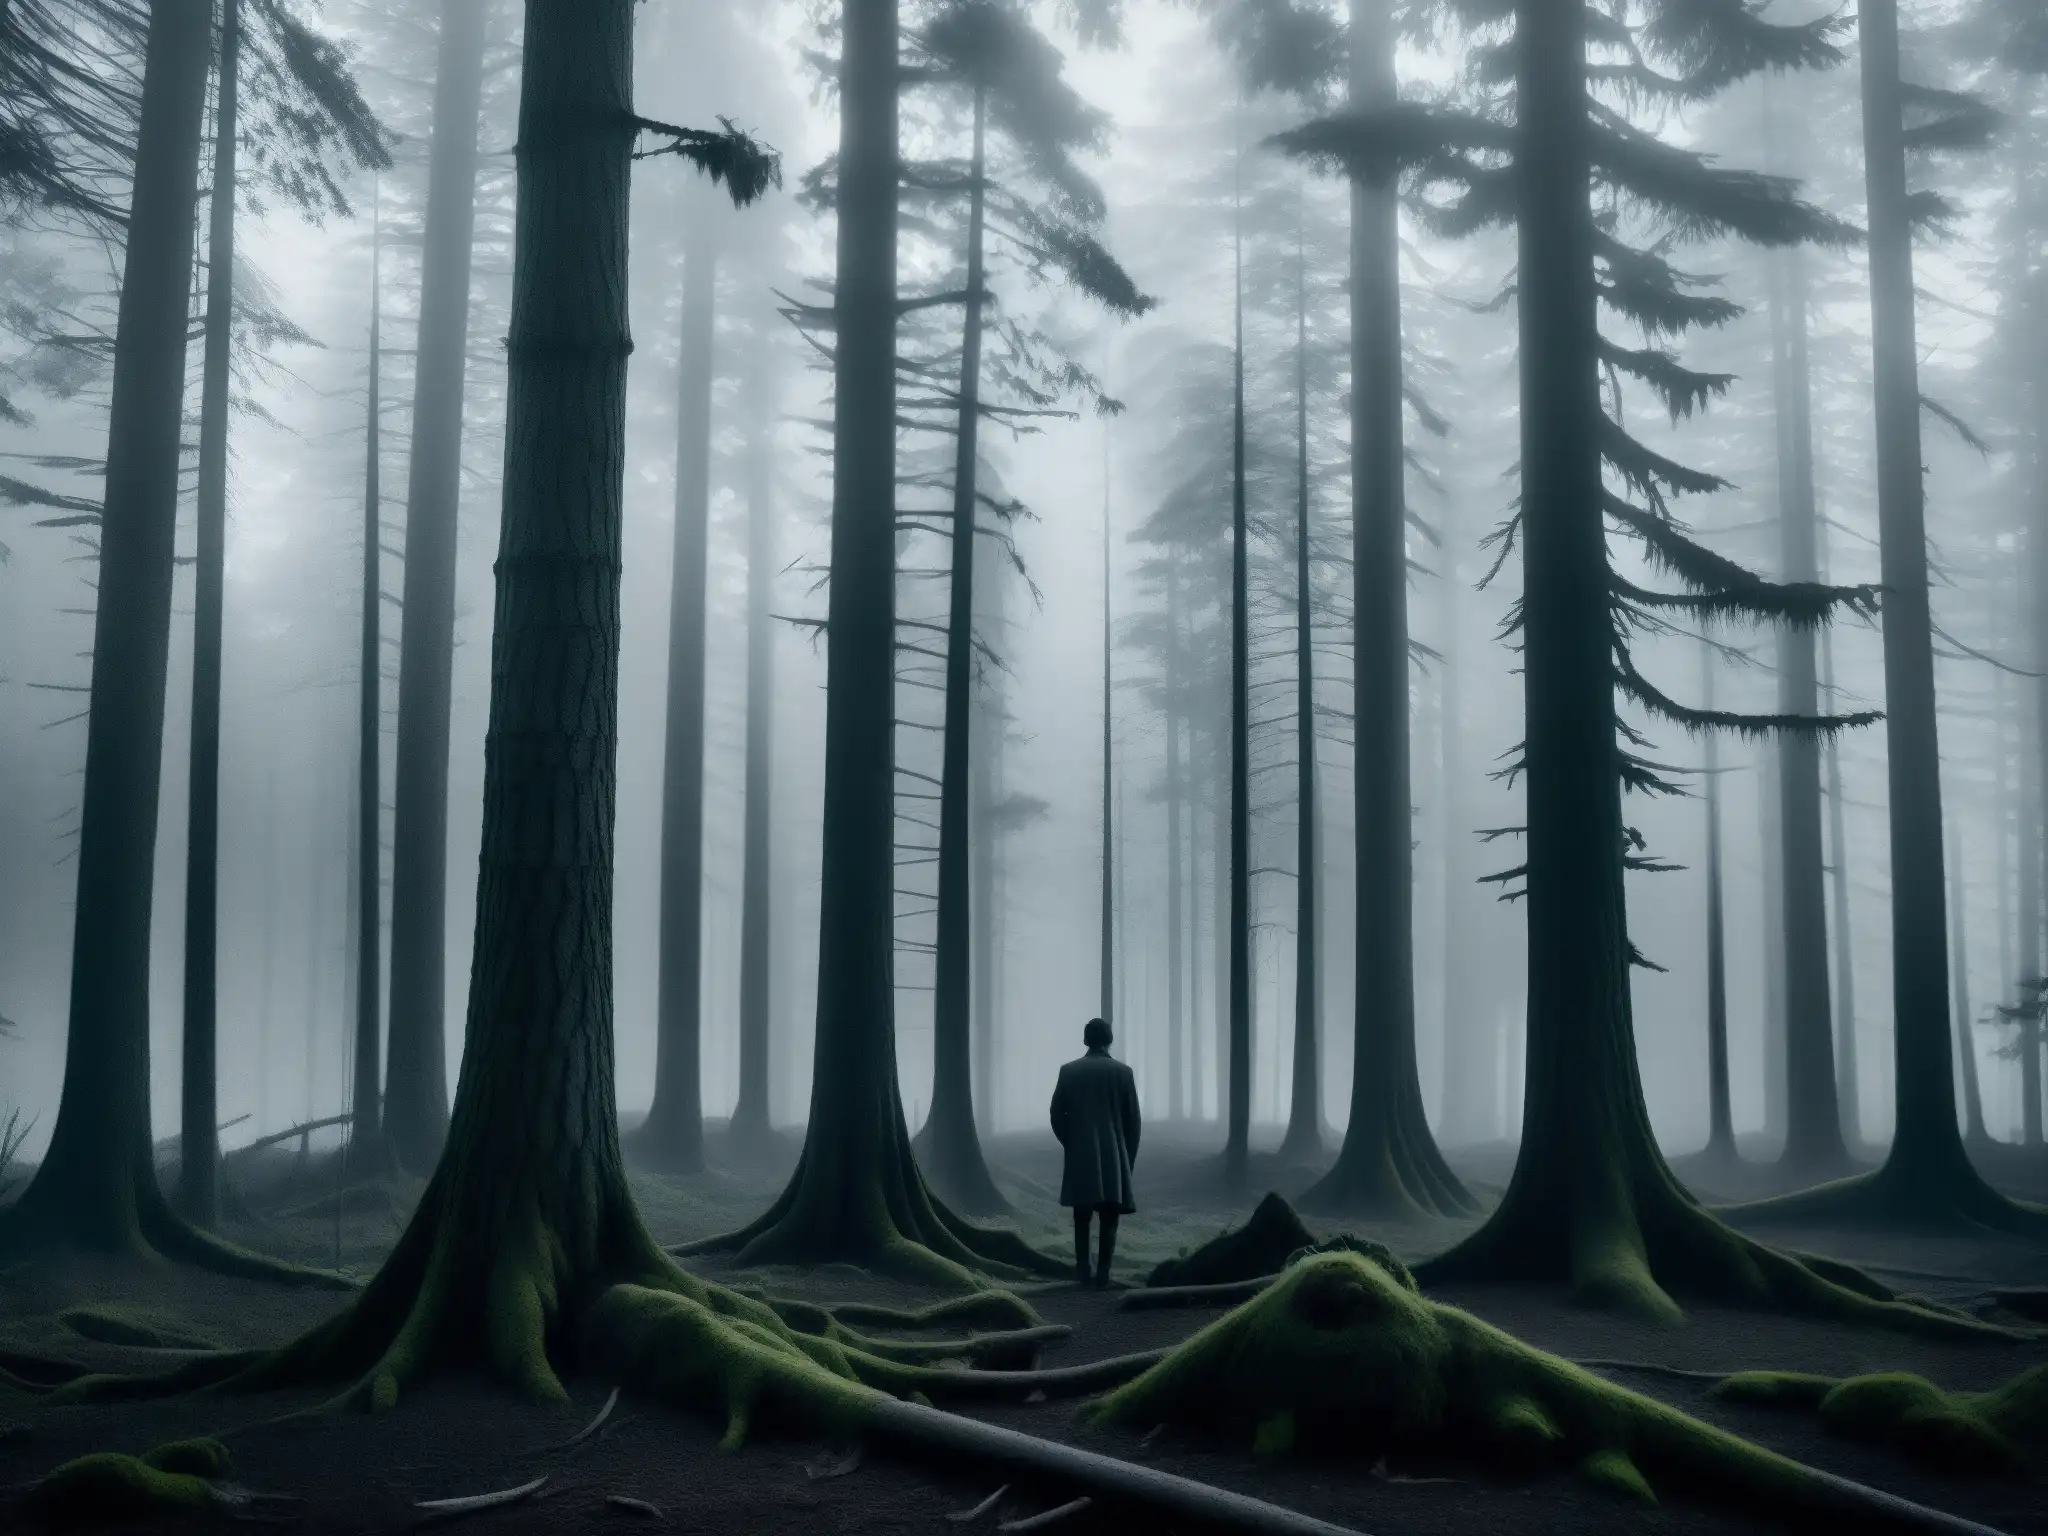 Misterioso bosque al atardecer con niebla, evocando el mito urbano Slenderman